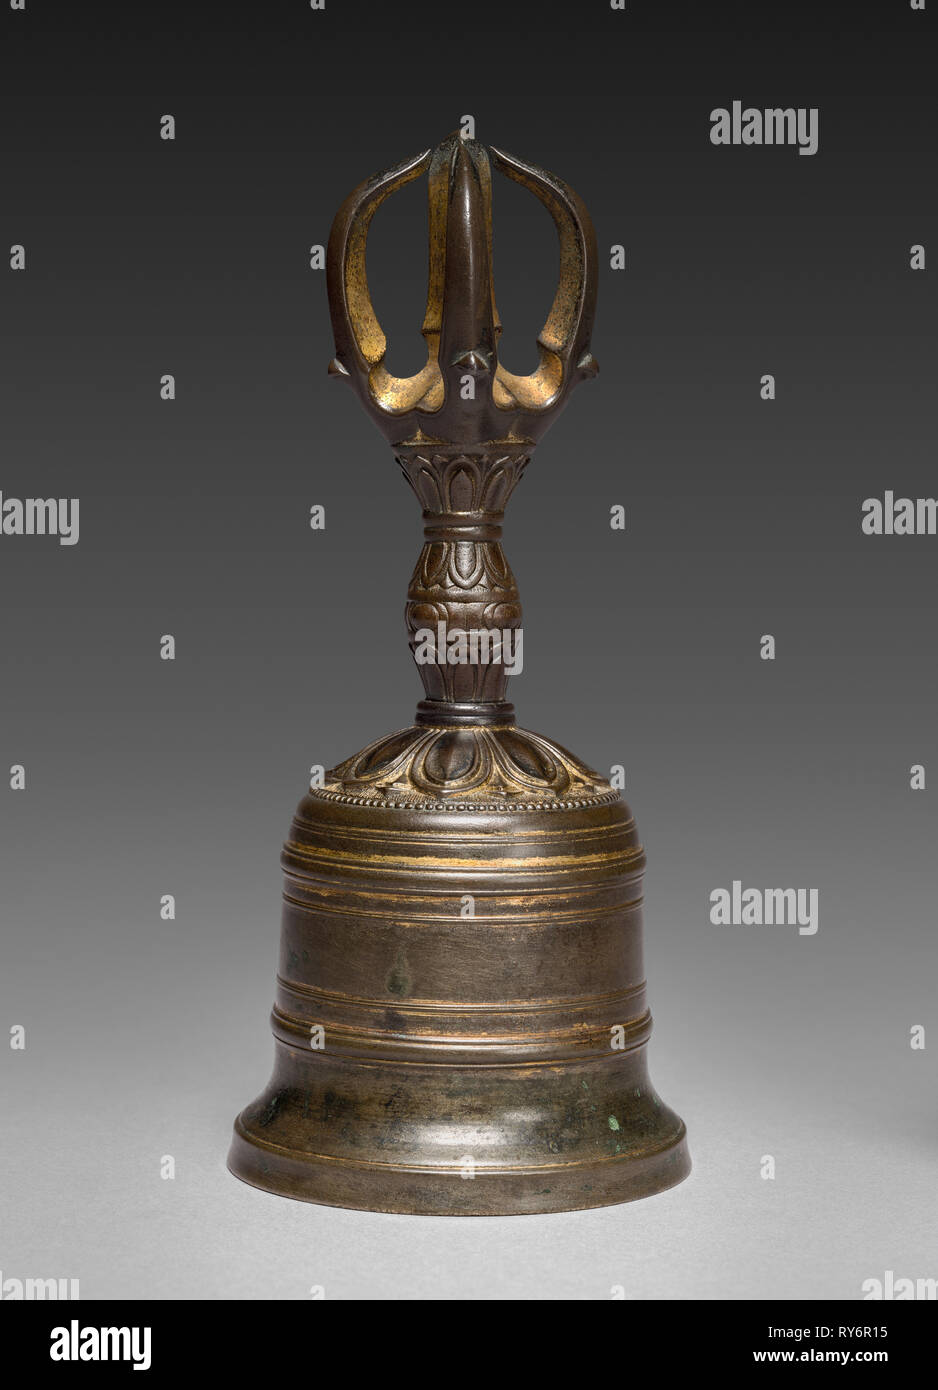 A closeup of Tibetan bells and an old spiritual book Stock Photo - Alamy